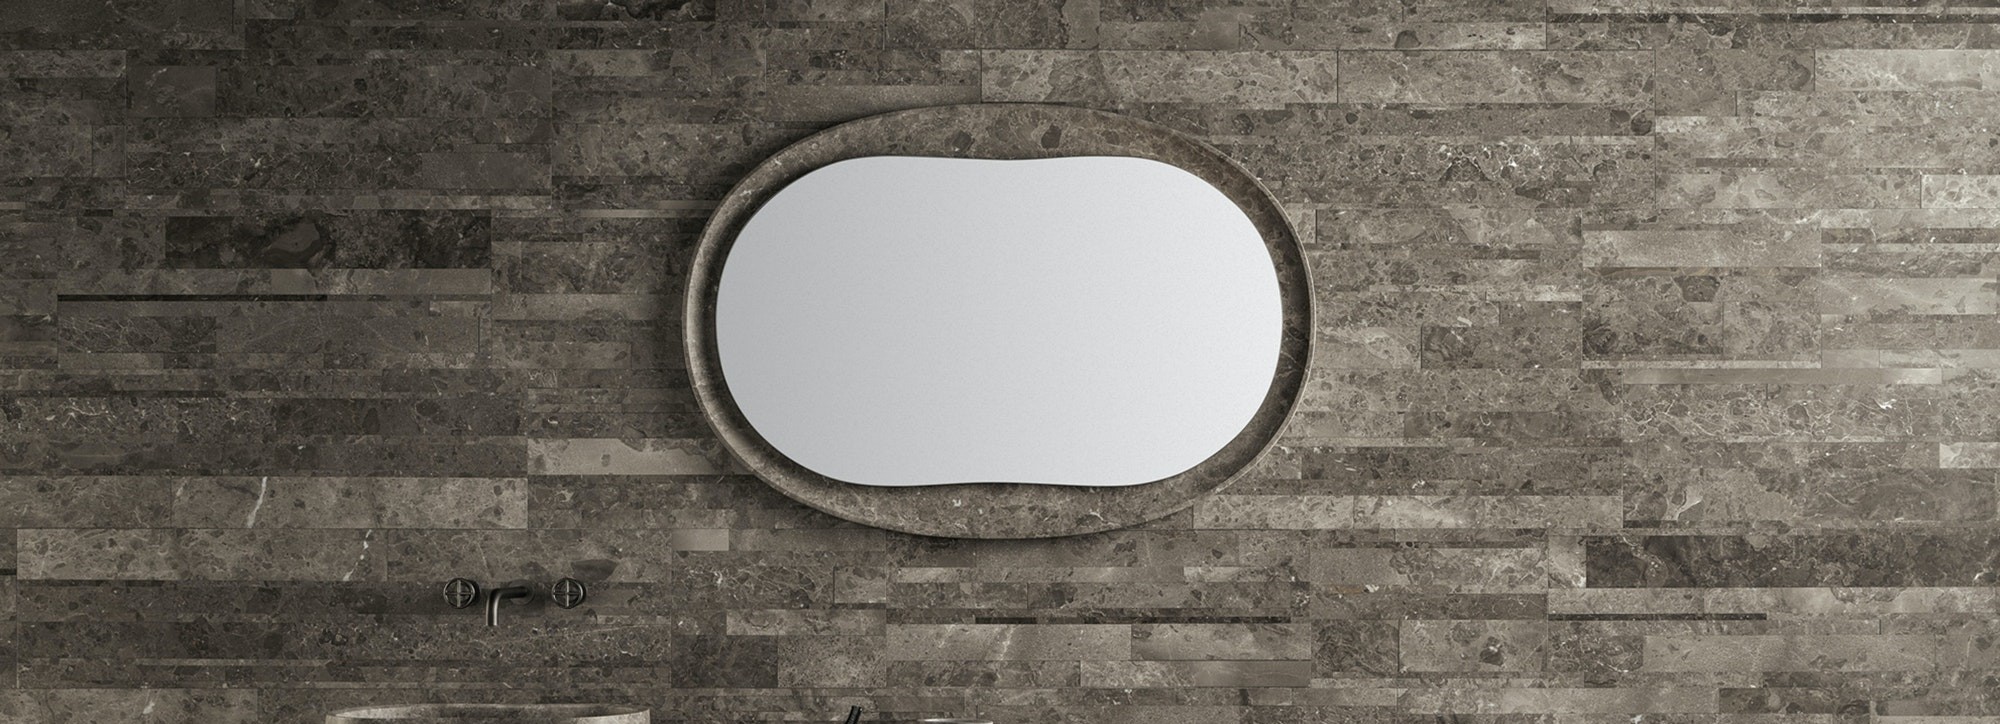 意大利Salvatori Boffi的Anima Mirror 镜子 细节图